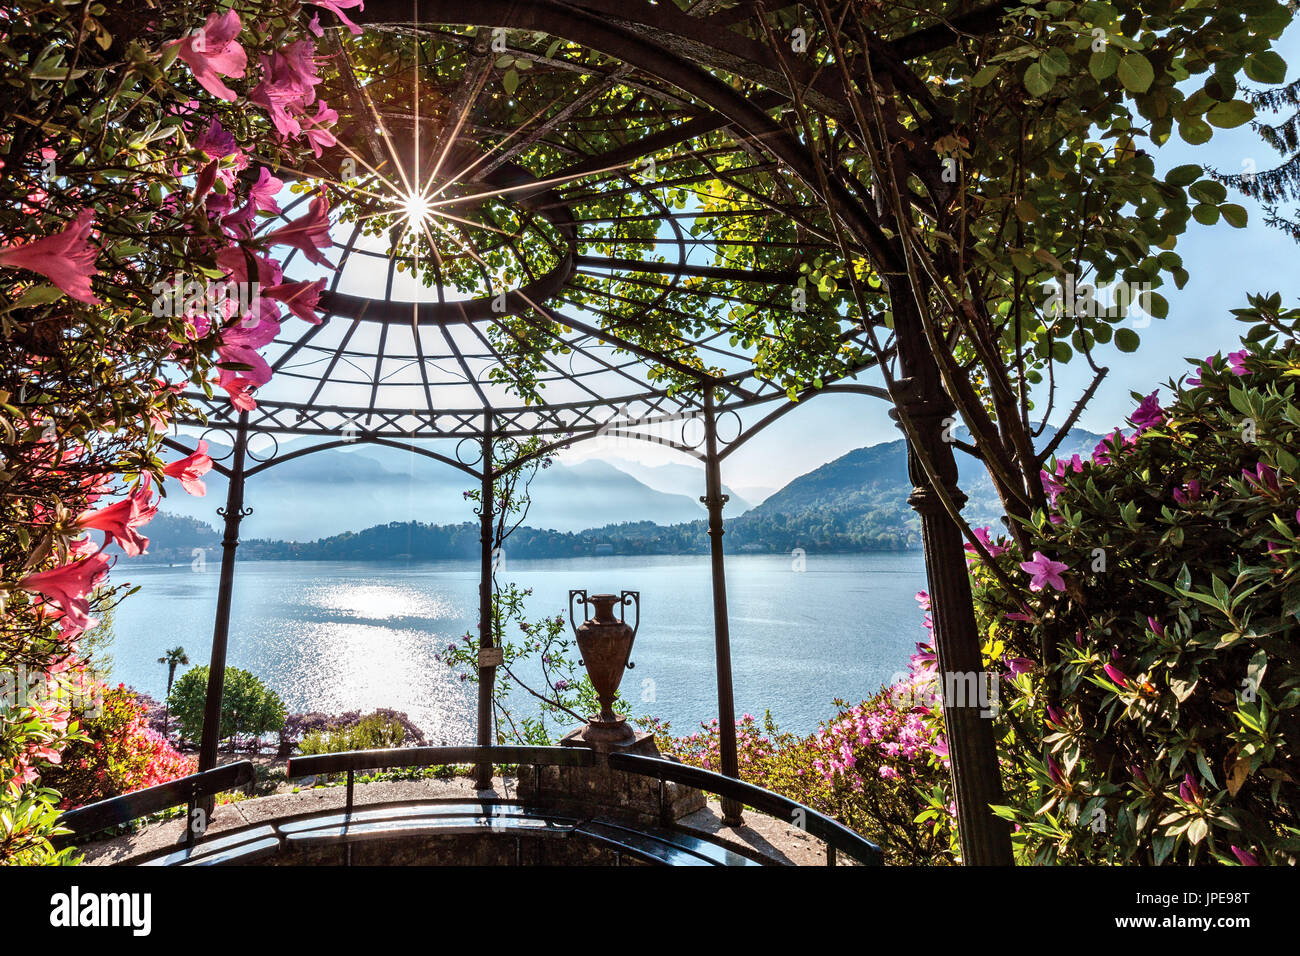 Villa Carlotta, Tremezzo, Como lake, Lombardy, Italy. Details of the villa's garden in bloom. Stock Photo